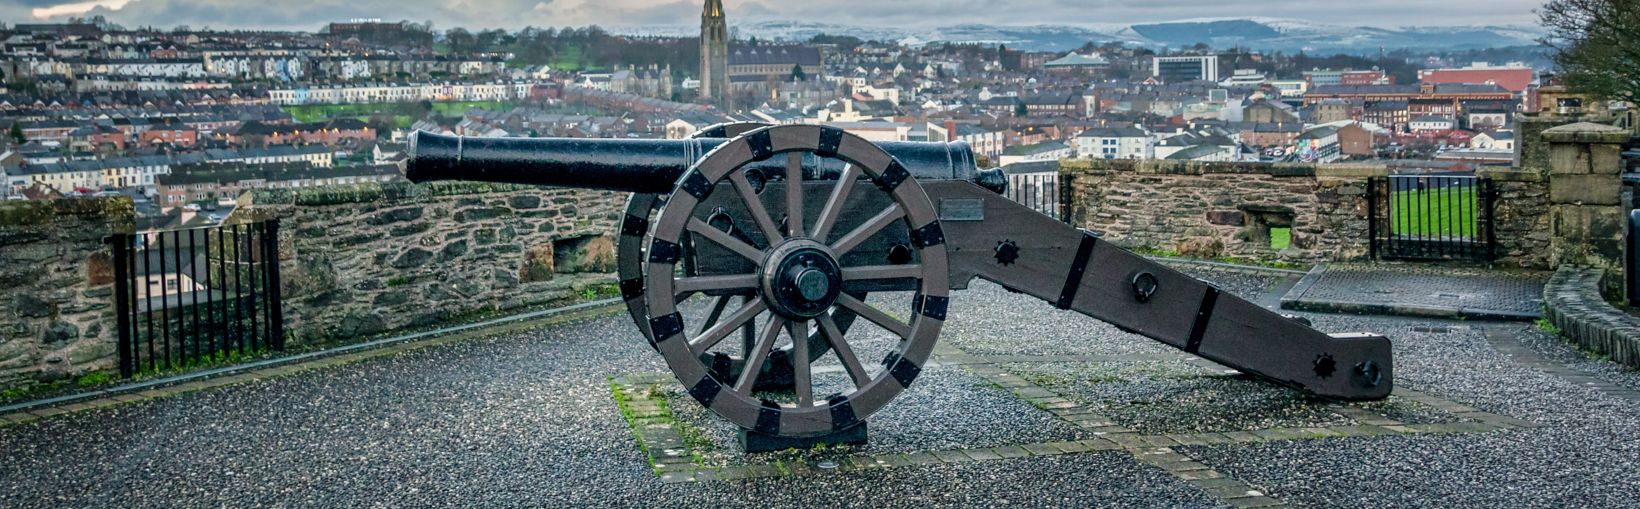 Esta es una imagen del antiguo cañón de asedio en los históricos Muros de Derry en Irlanda del Norte